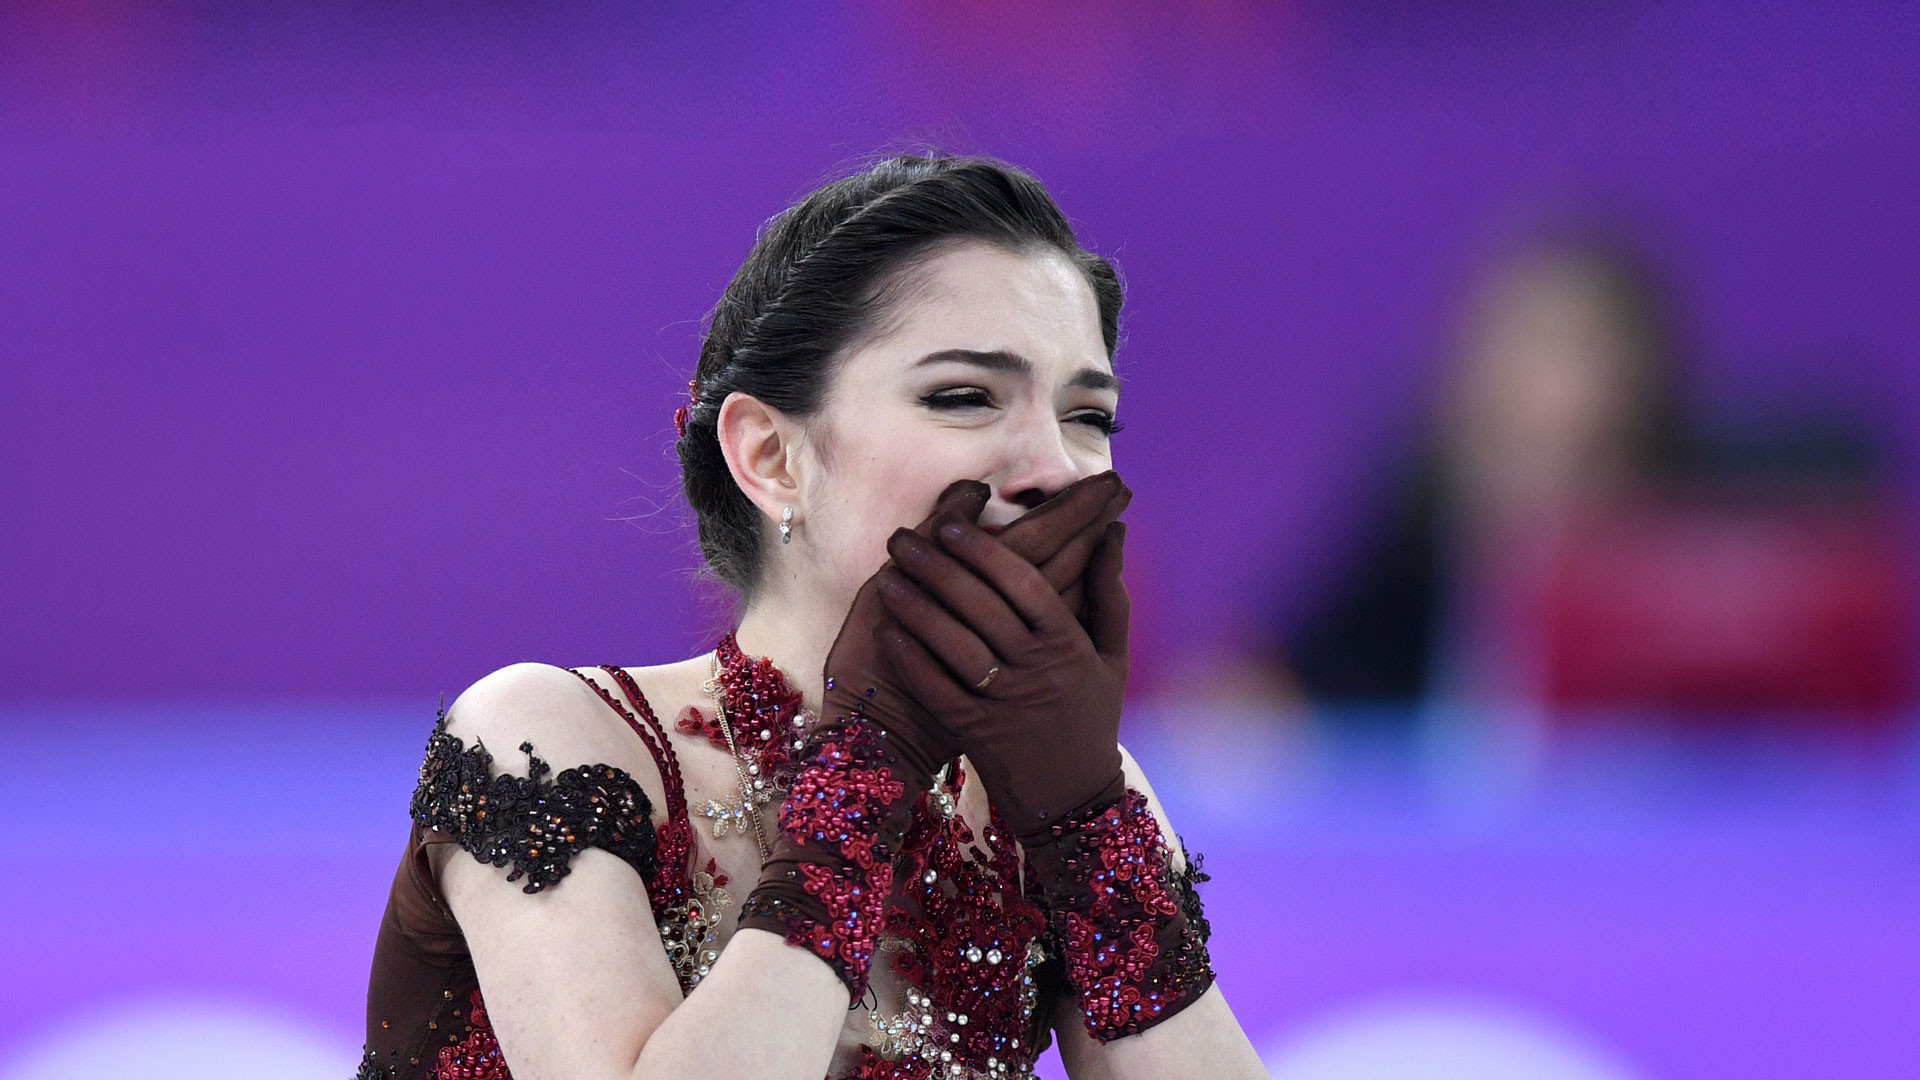 Медведева: на Олимпиаде-2018 было обидно, я плакала, но что поделаешь?